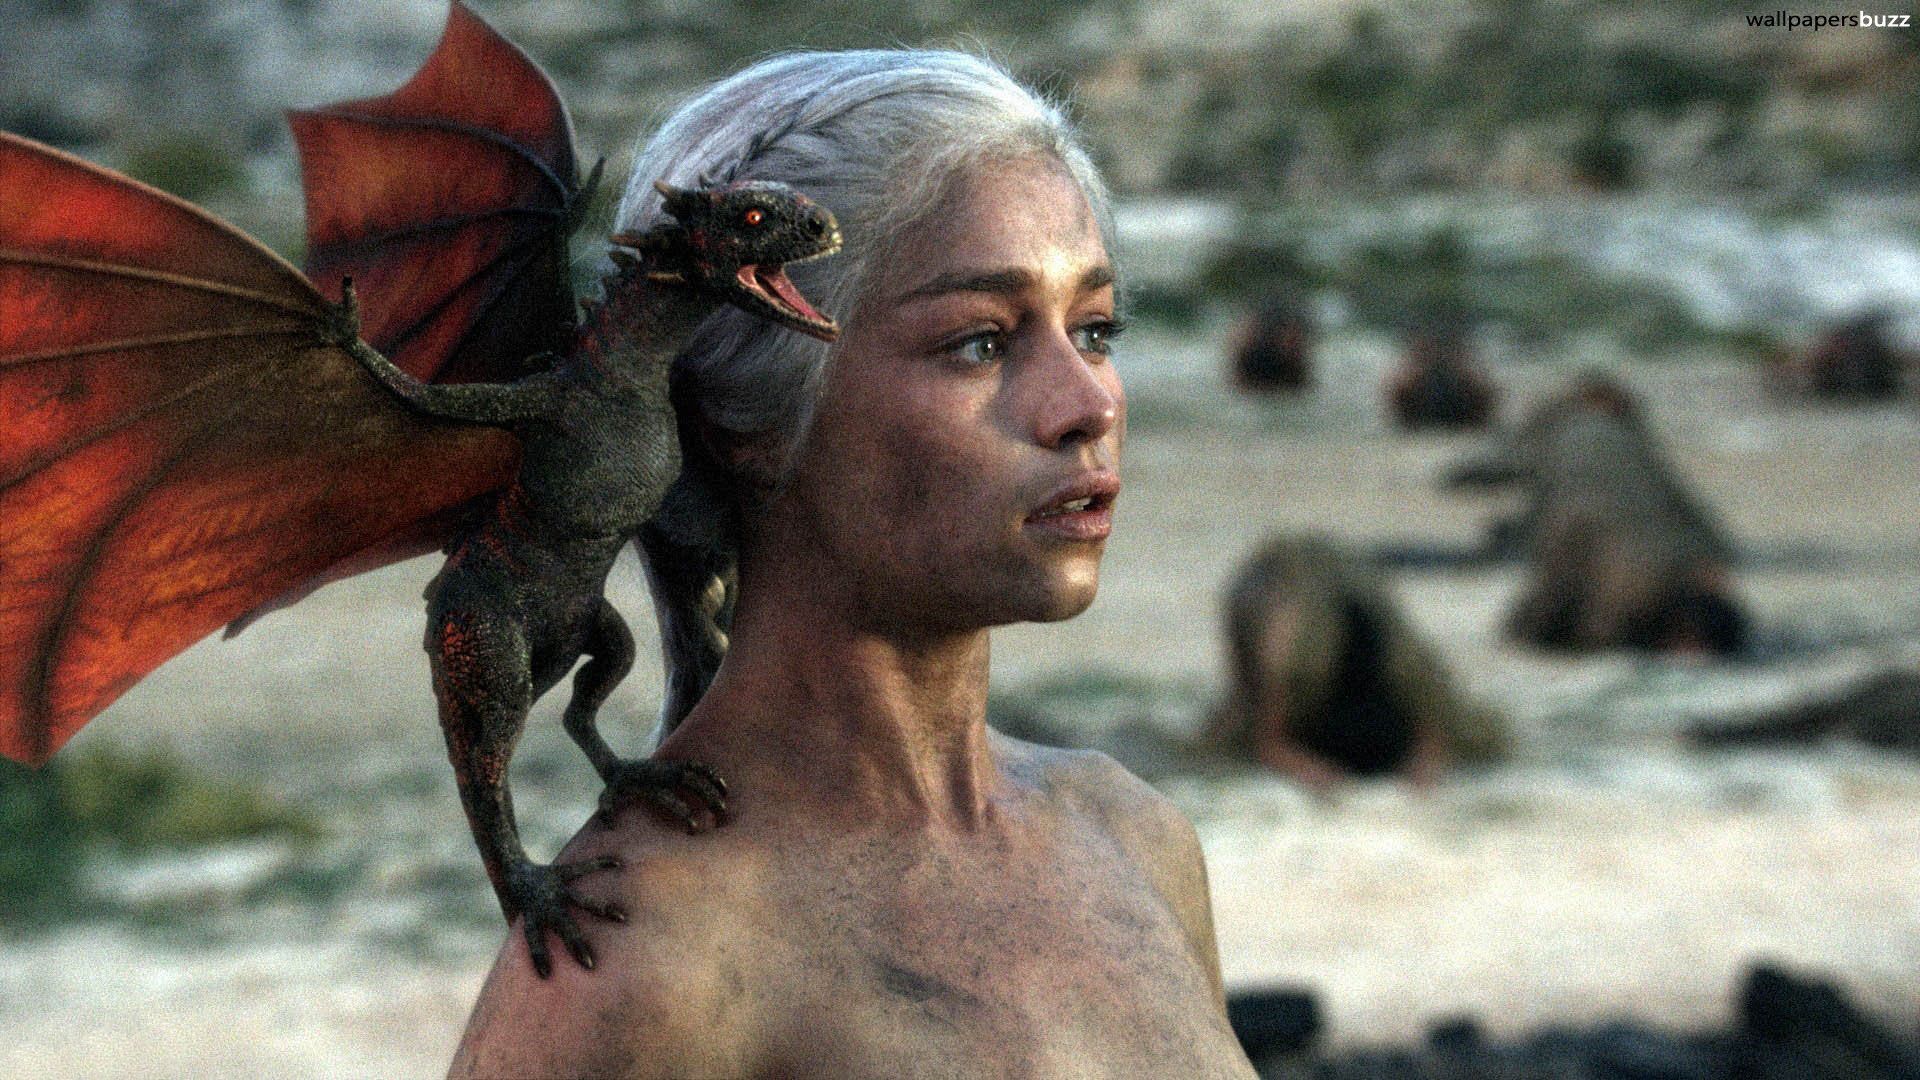 Khaleesi Mother of Dragons of Thrones Wallpaper